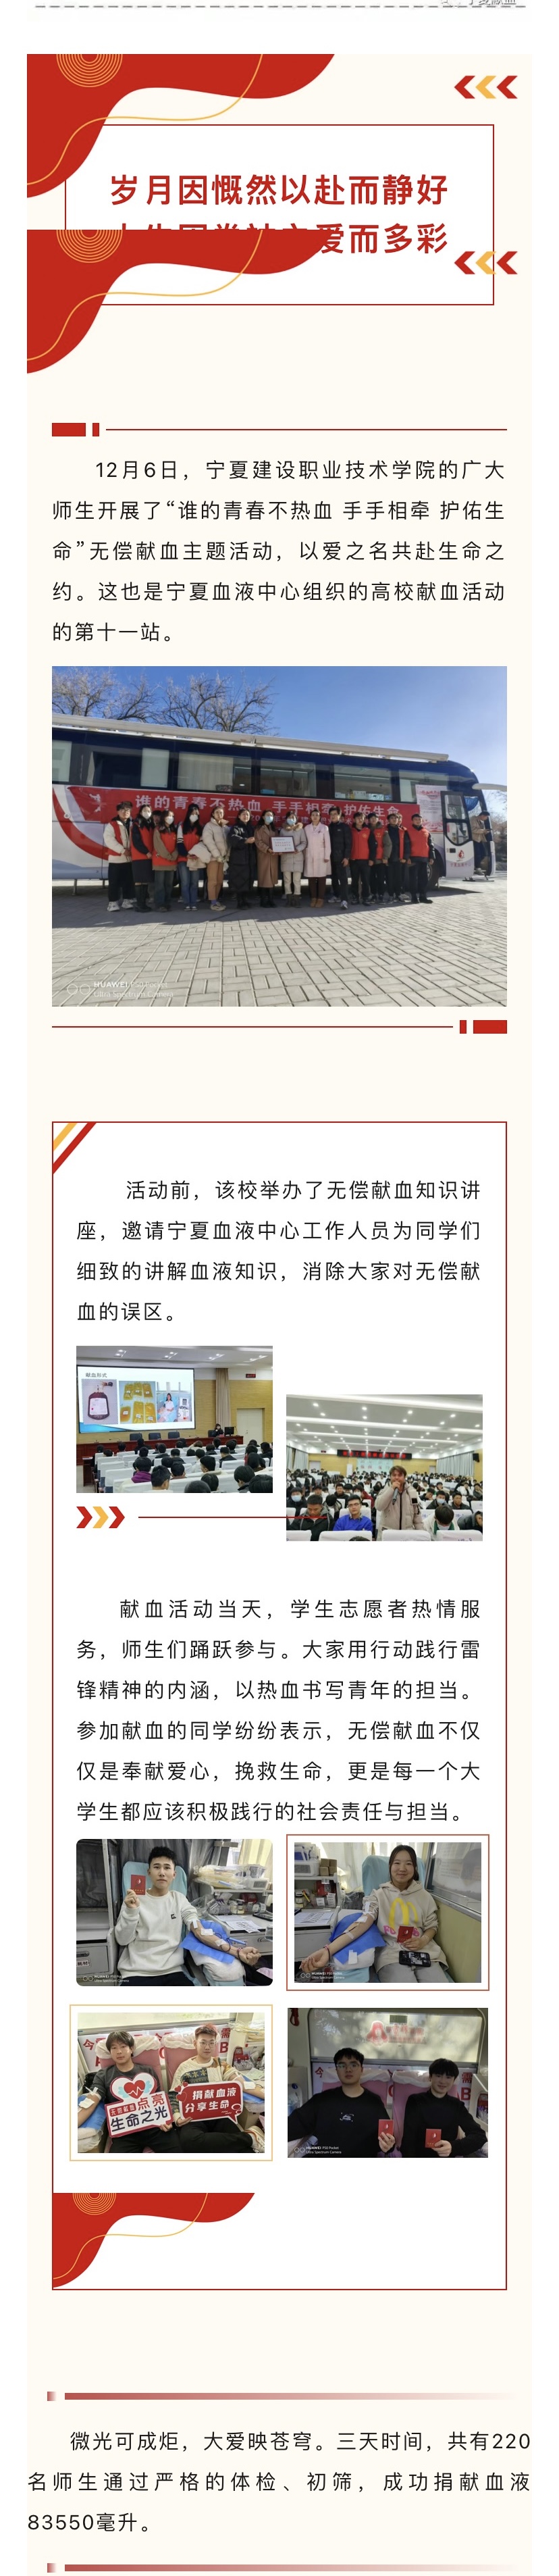 【尚善笃行】高校献血第十一站—宁夏建设 职业技术学院(图1)